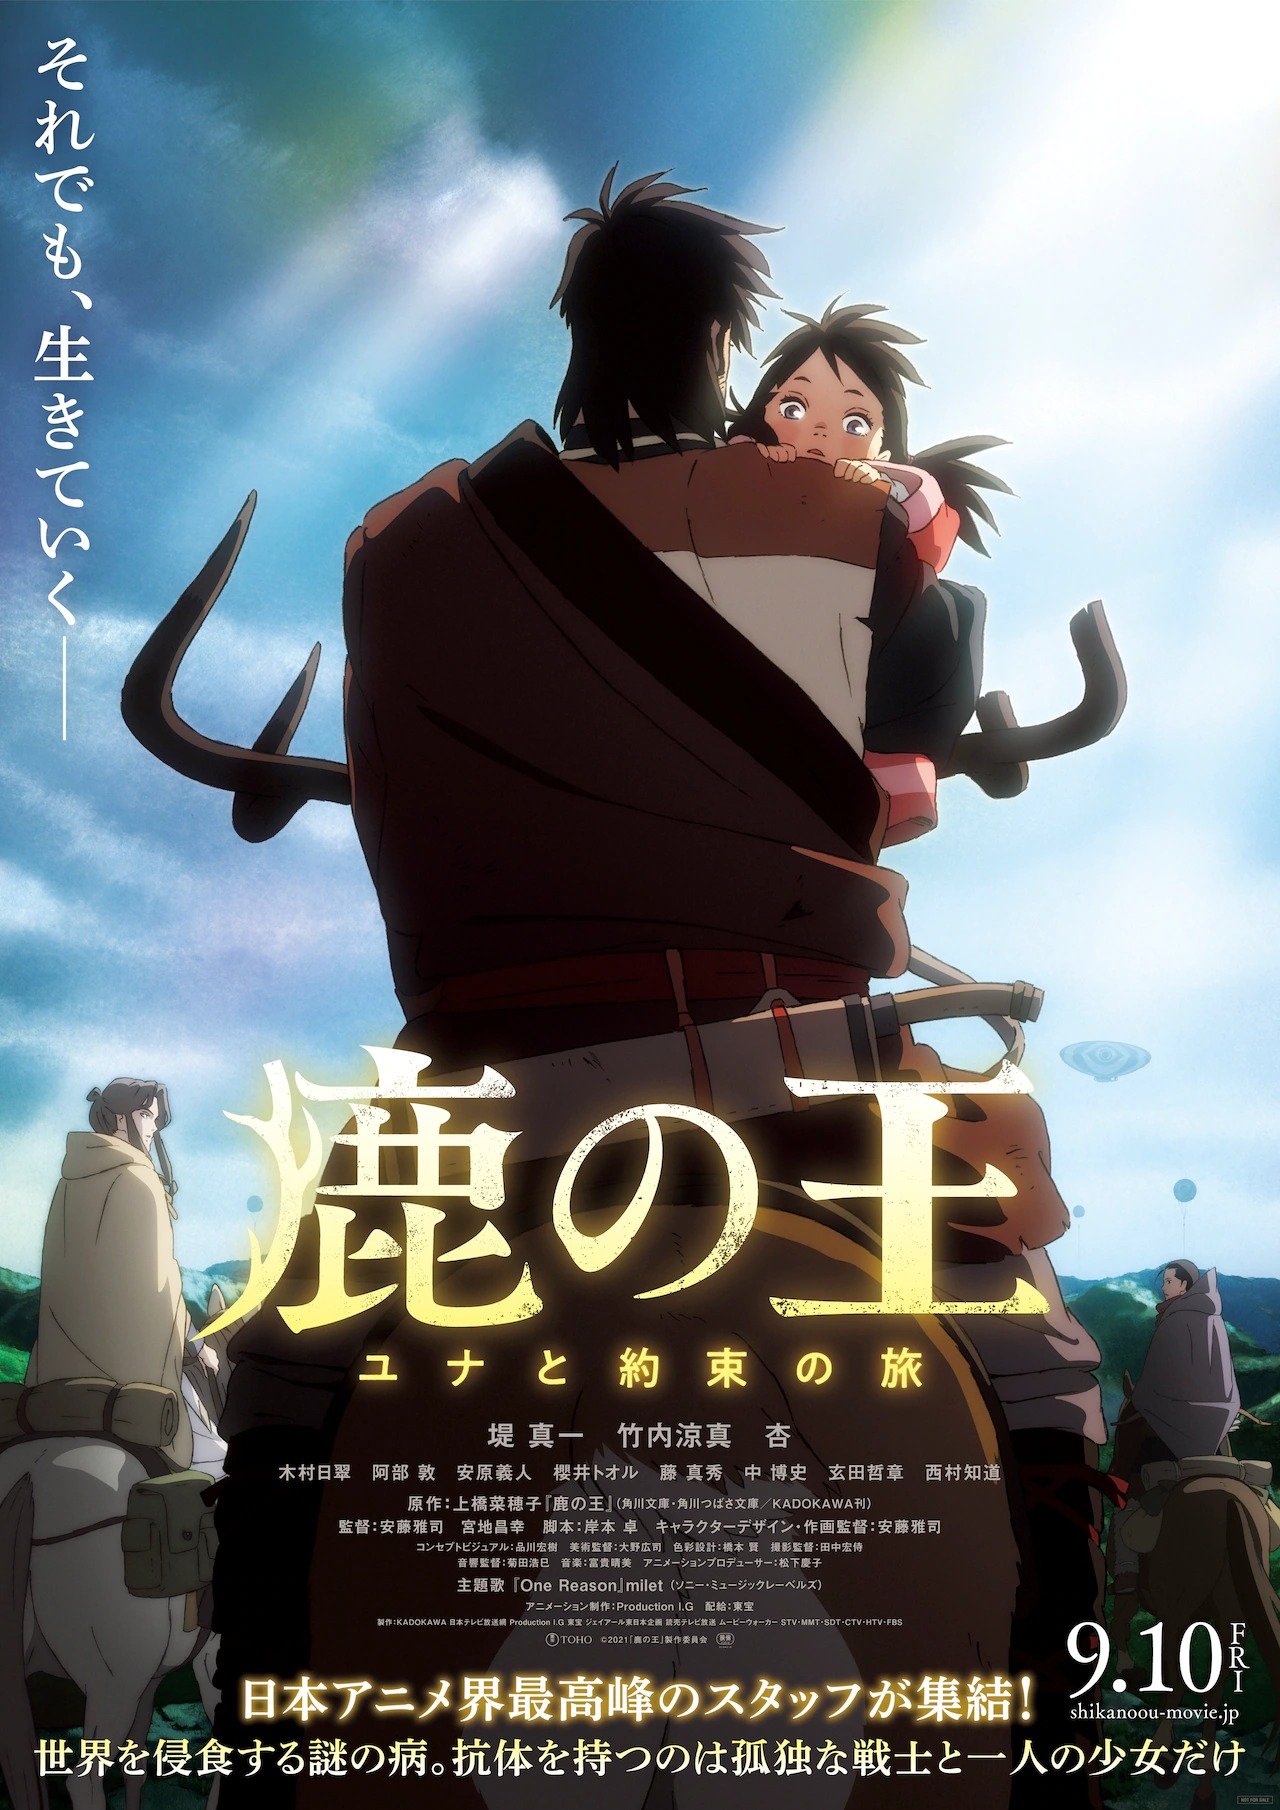 Ars no Kyoju – Novo trailer revela data de estreia do anime original -  Manga Livre RS